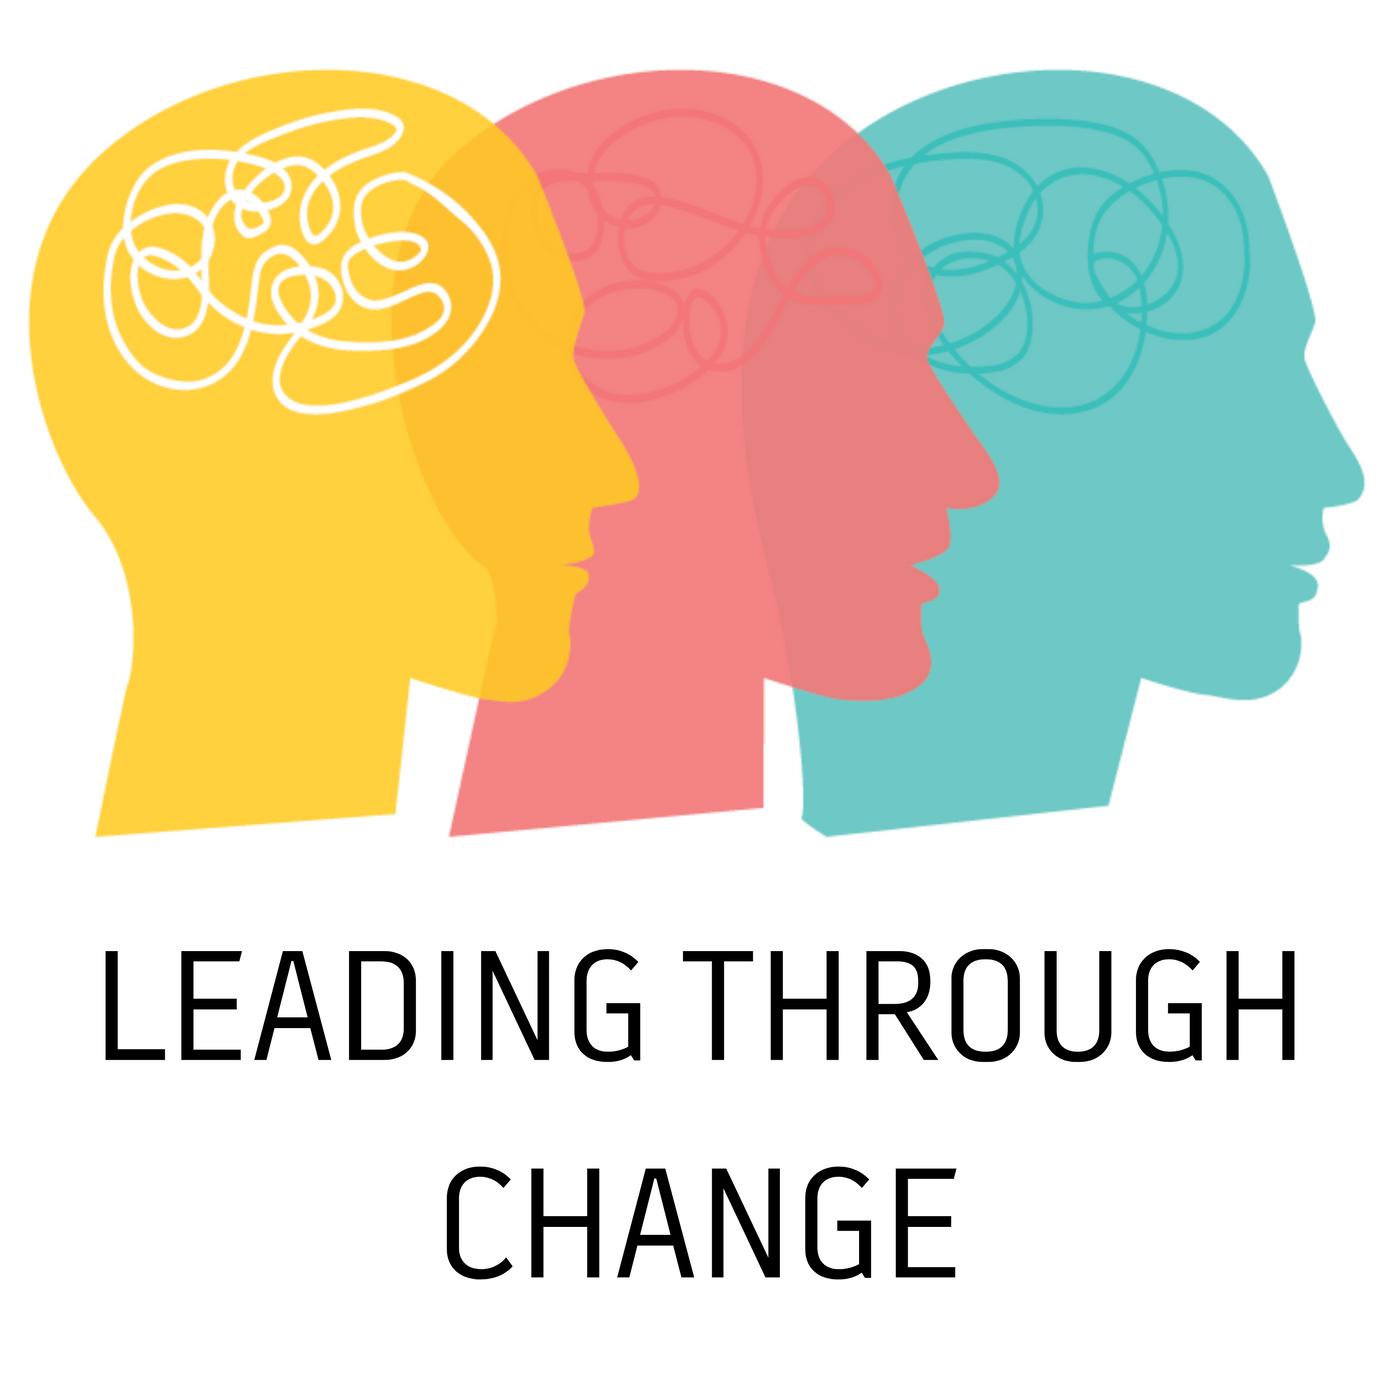 Leading through change Leading through change